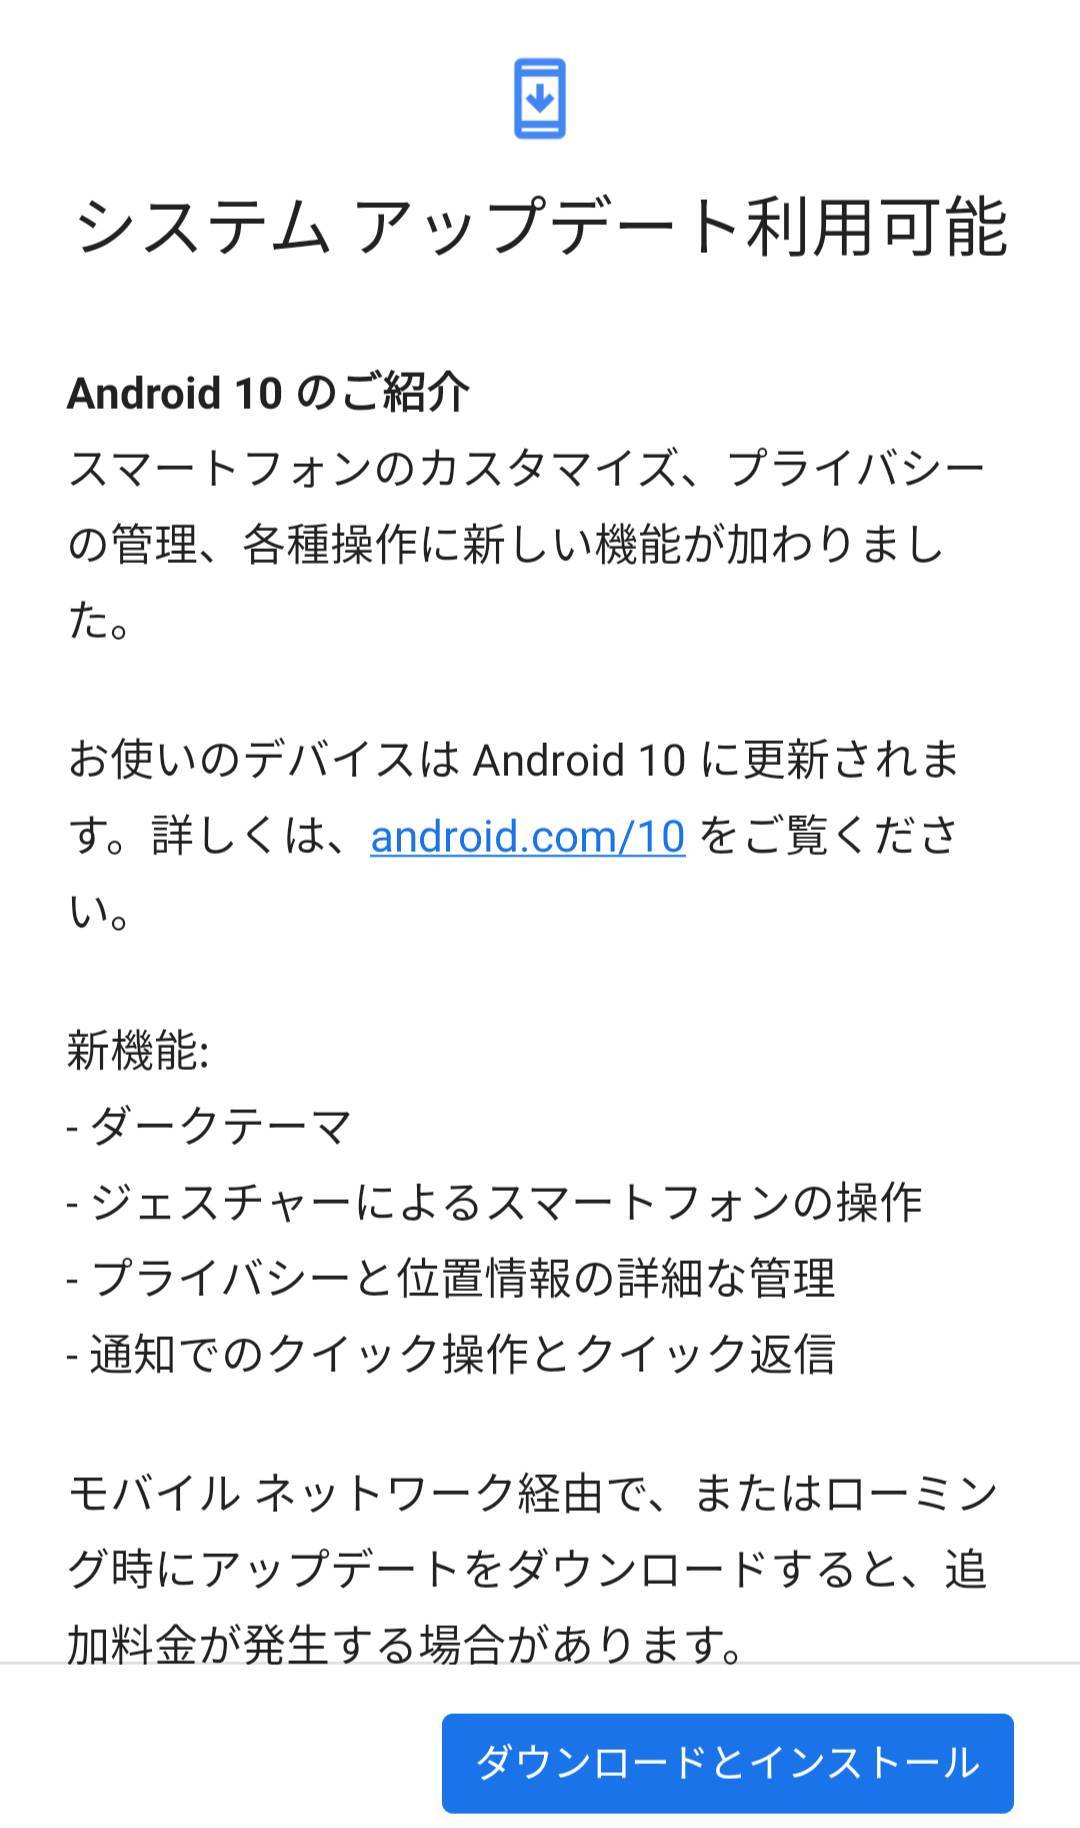 Ps4をandroidスマホでリモートプレイ やり方 レビュー Nexus 7でも動く Appliv Topics